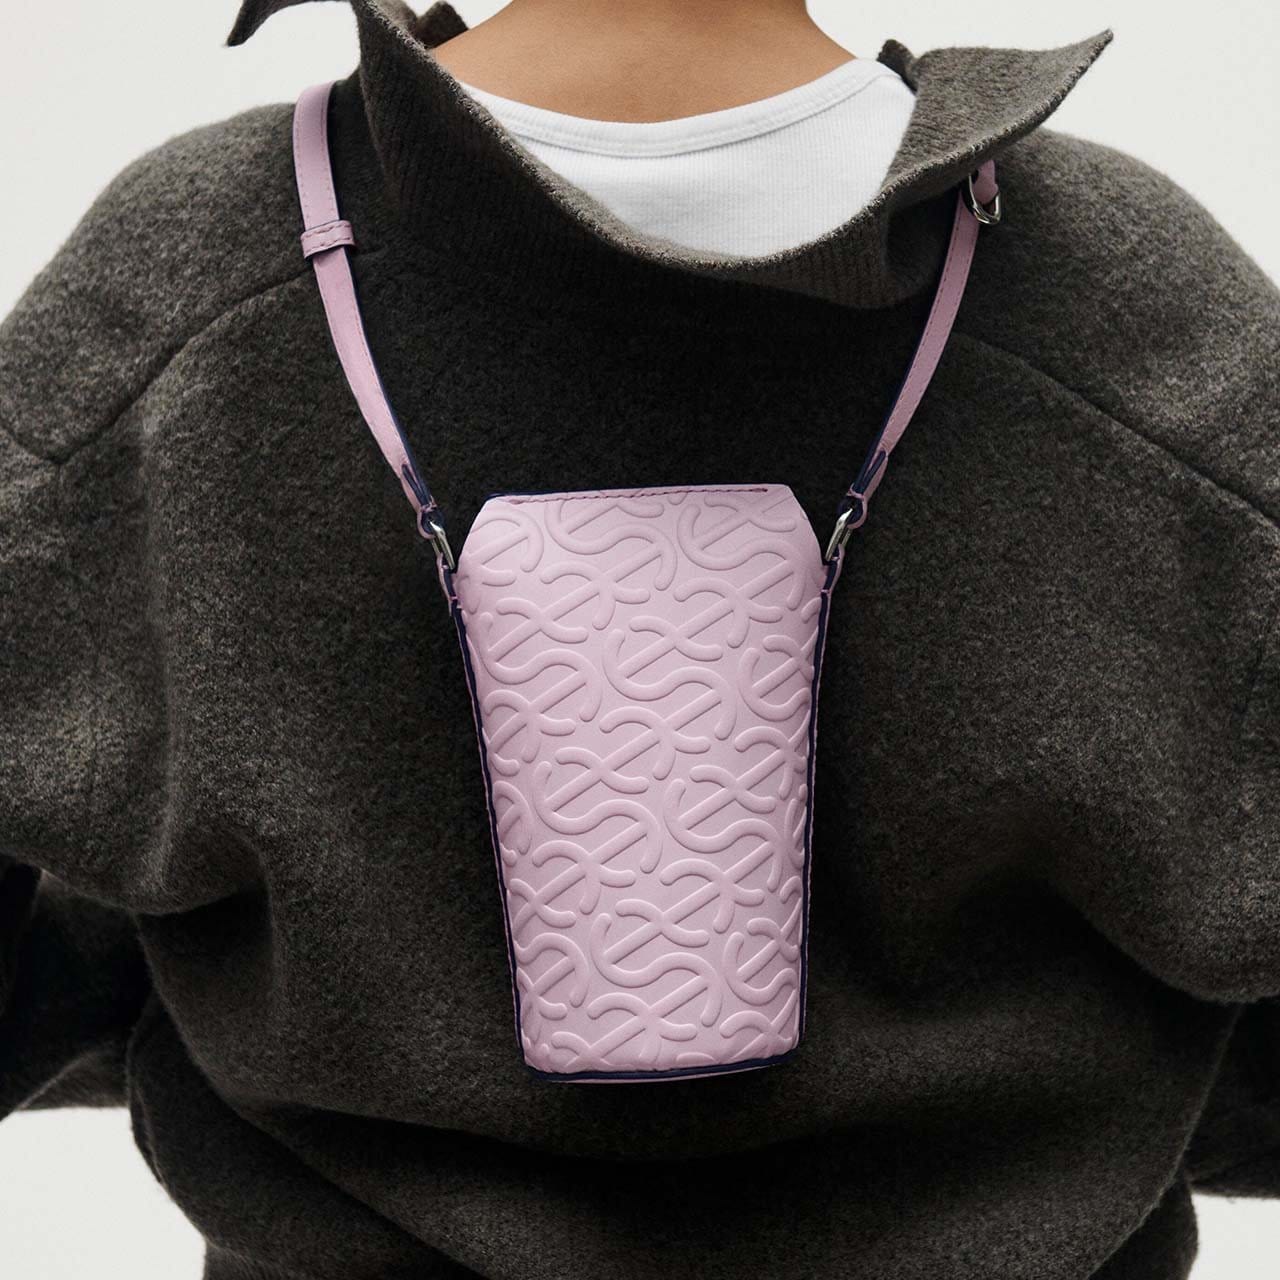 Model wearing pink pot bag around their neck